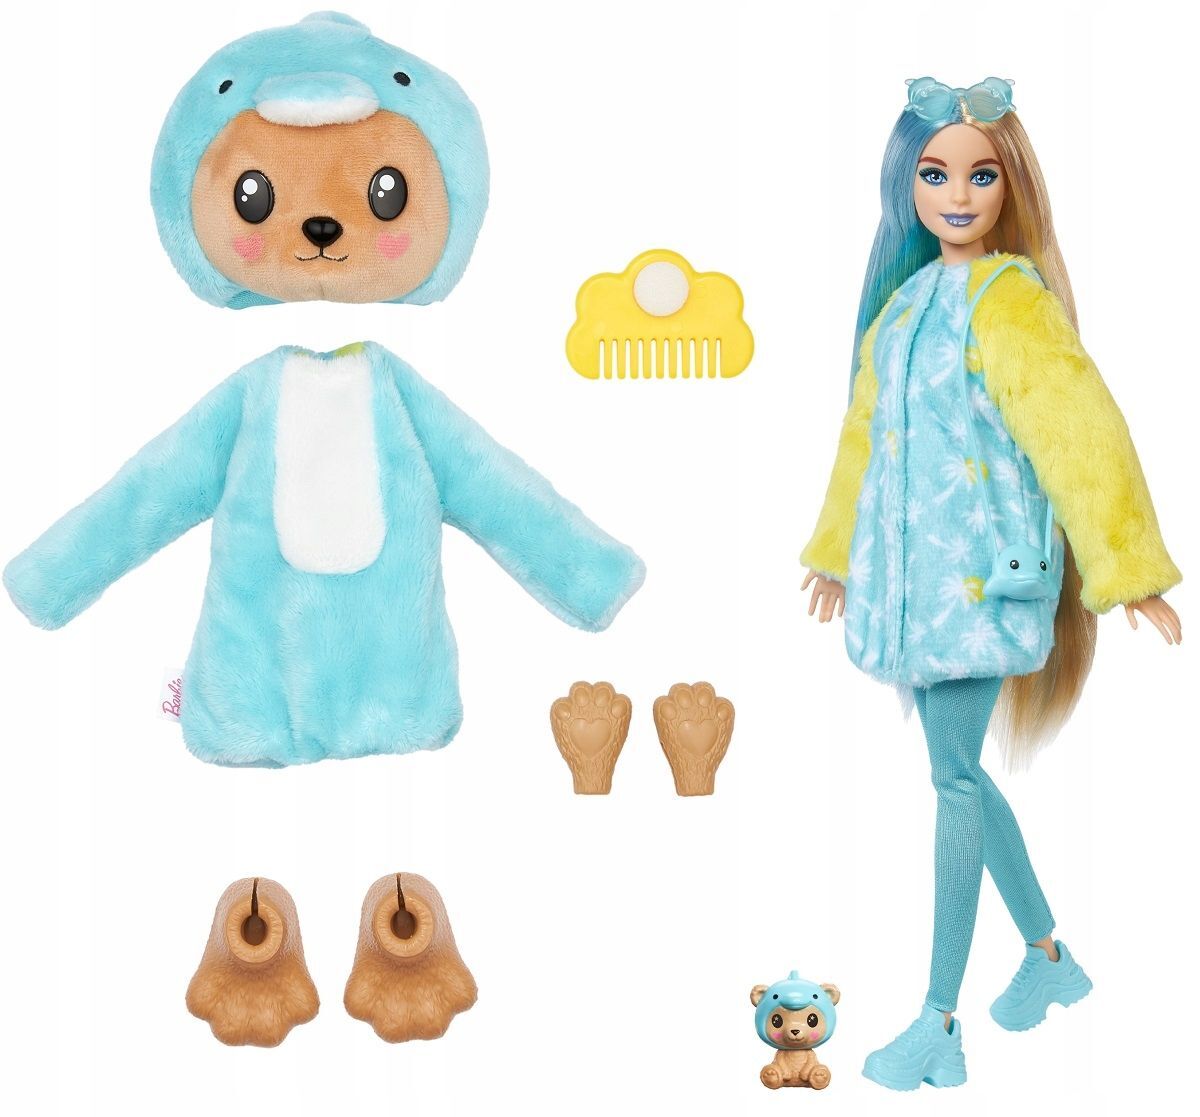 Кукла Barbie Cutie Reveal Dolphin Bear Плюшевый мишка в образе дельфина, HRK25 купальник гимнастический с юбкой для девочек dolphin factory